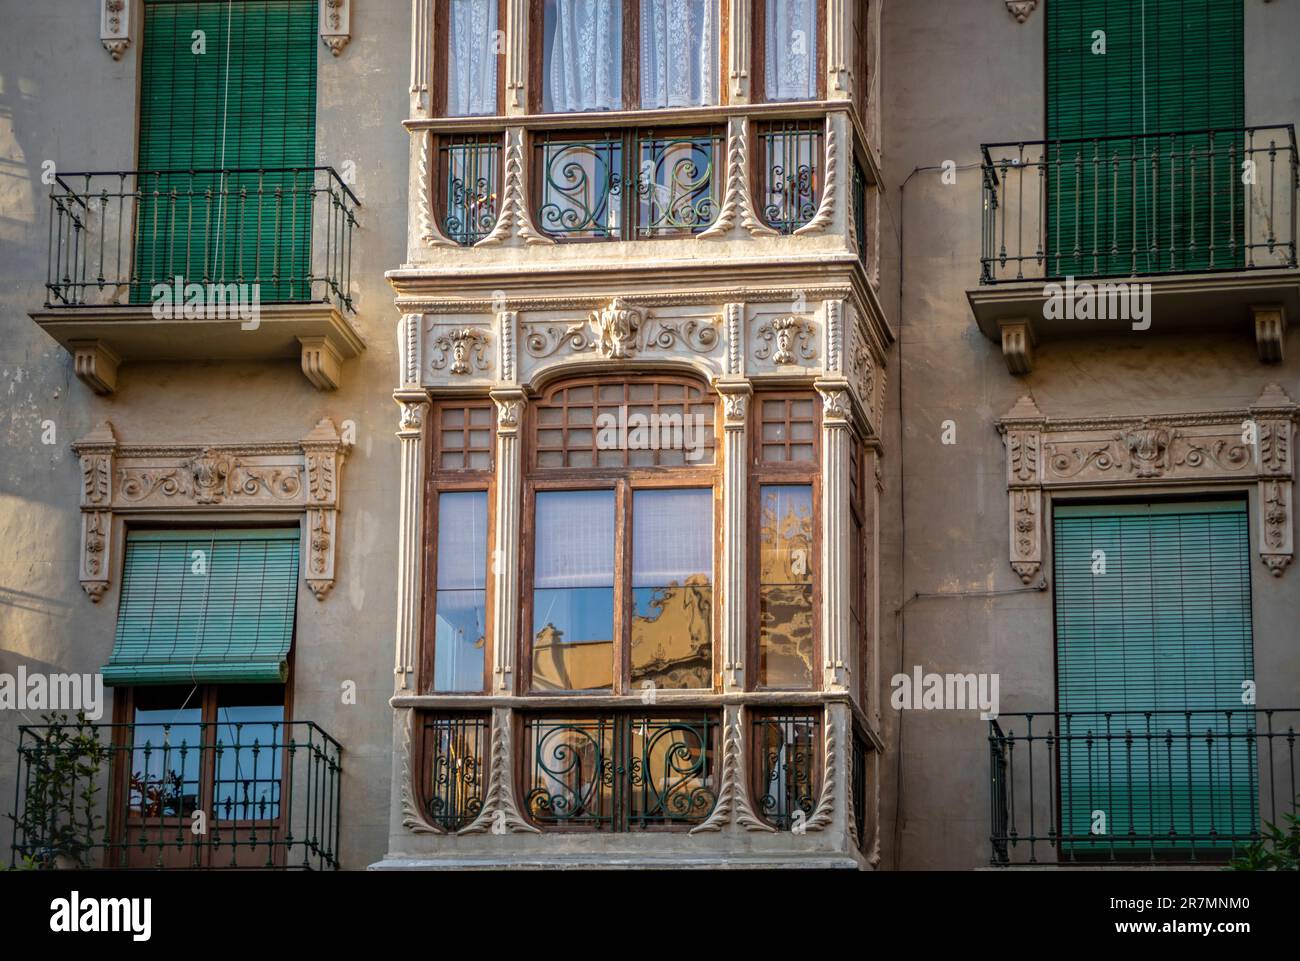 Belle façade d'un bâtiment du début du 20e siècle avec un balcon vitré sur une place à Murcie, en Espagne Banque D'Images